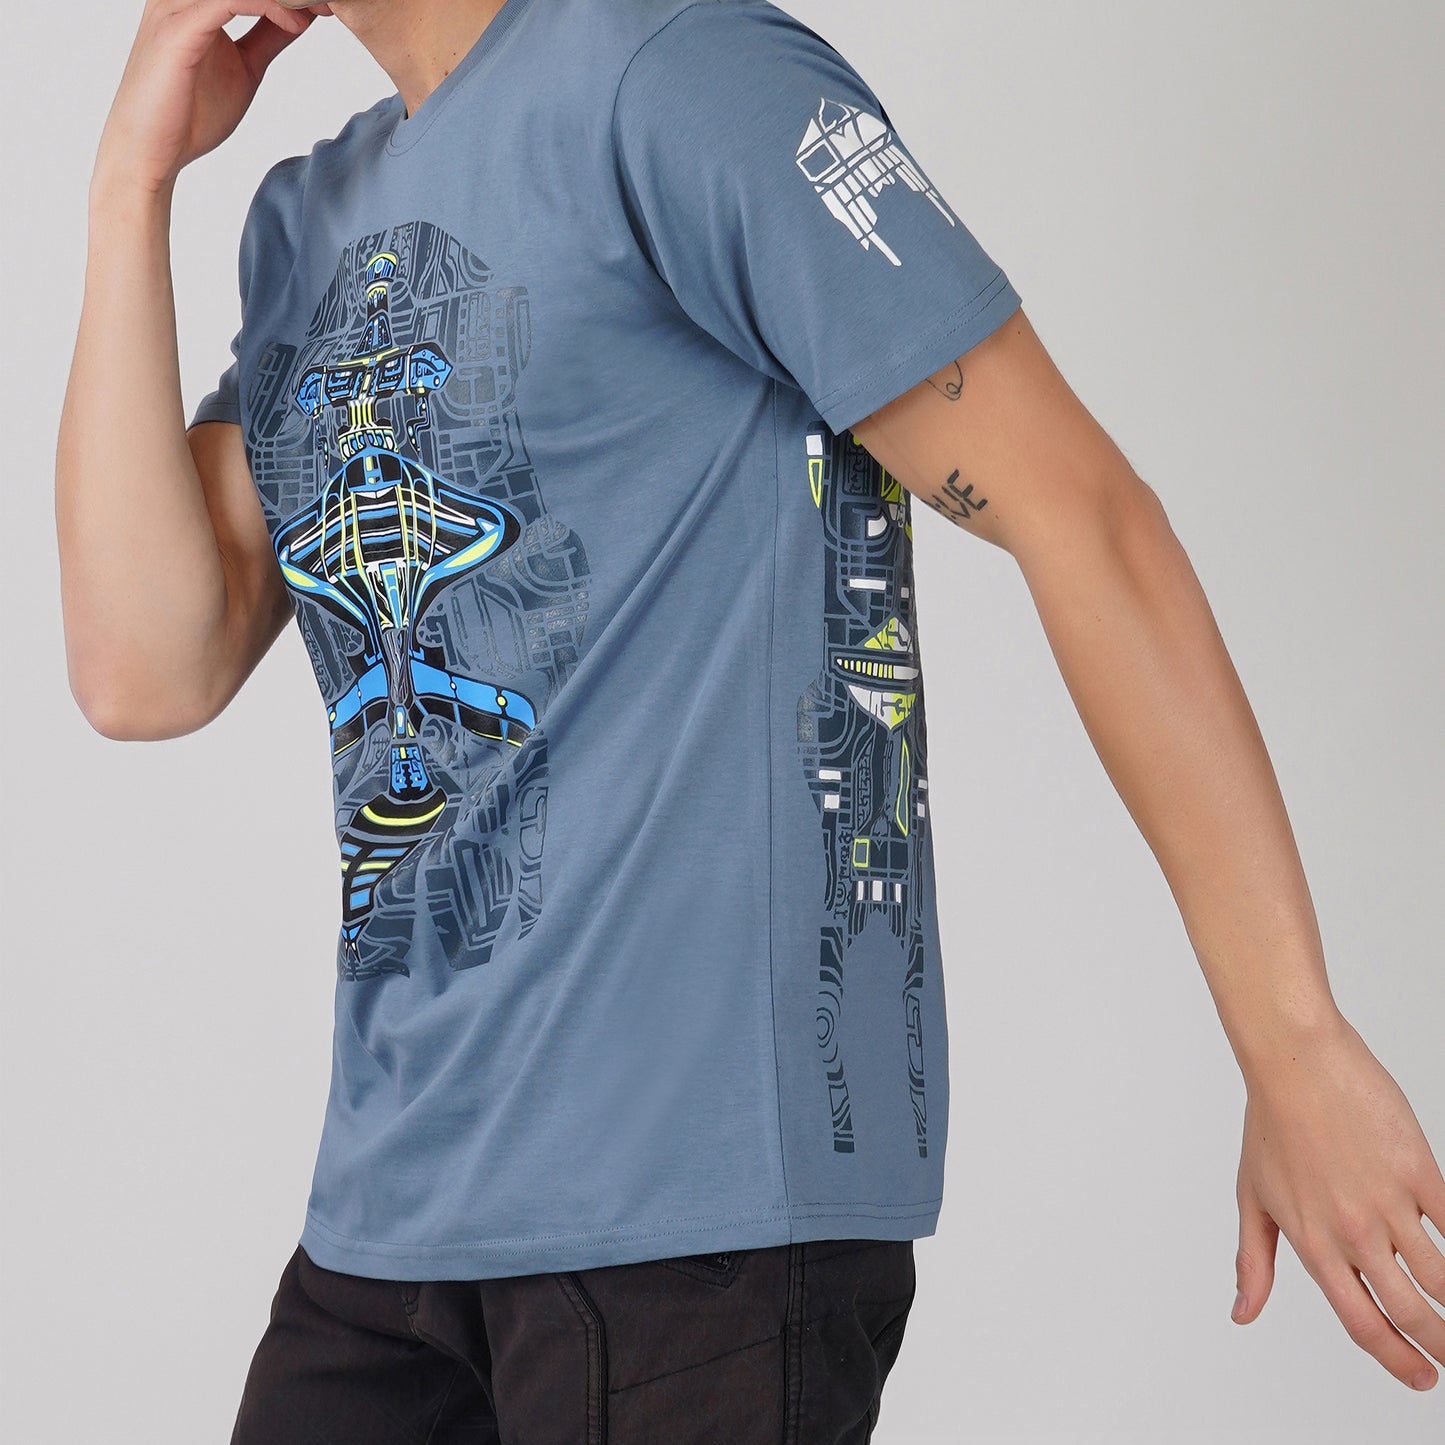 Alien T-shirt met ronde hals en halve mouw in oceaanblauw